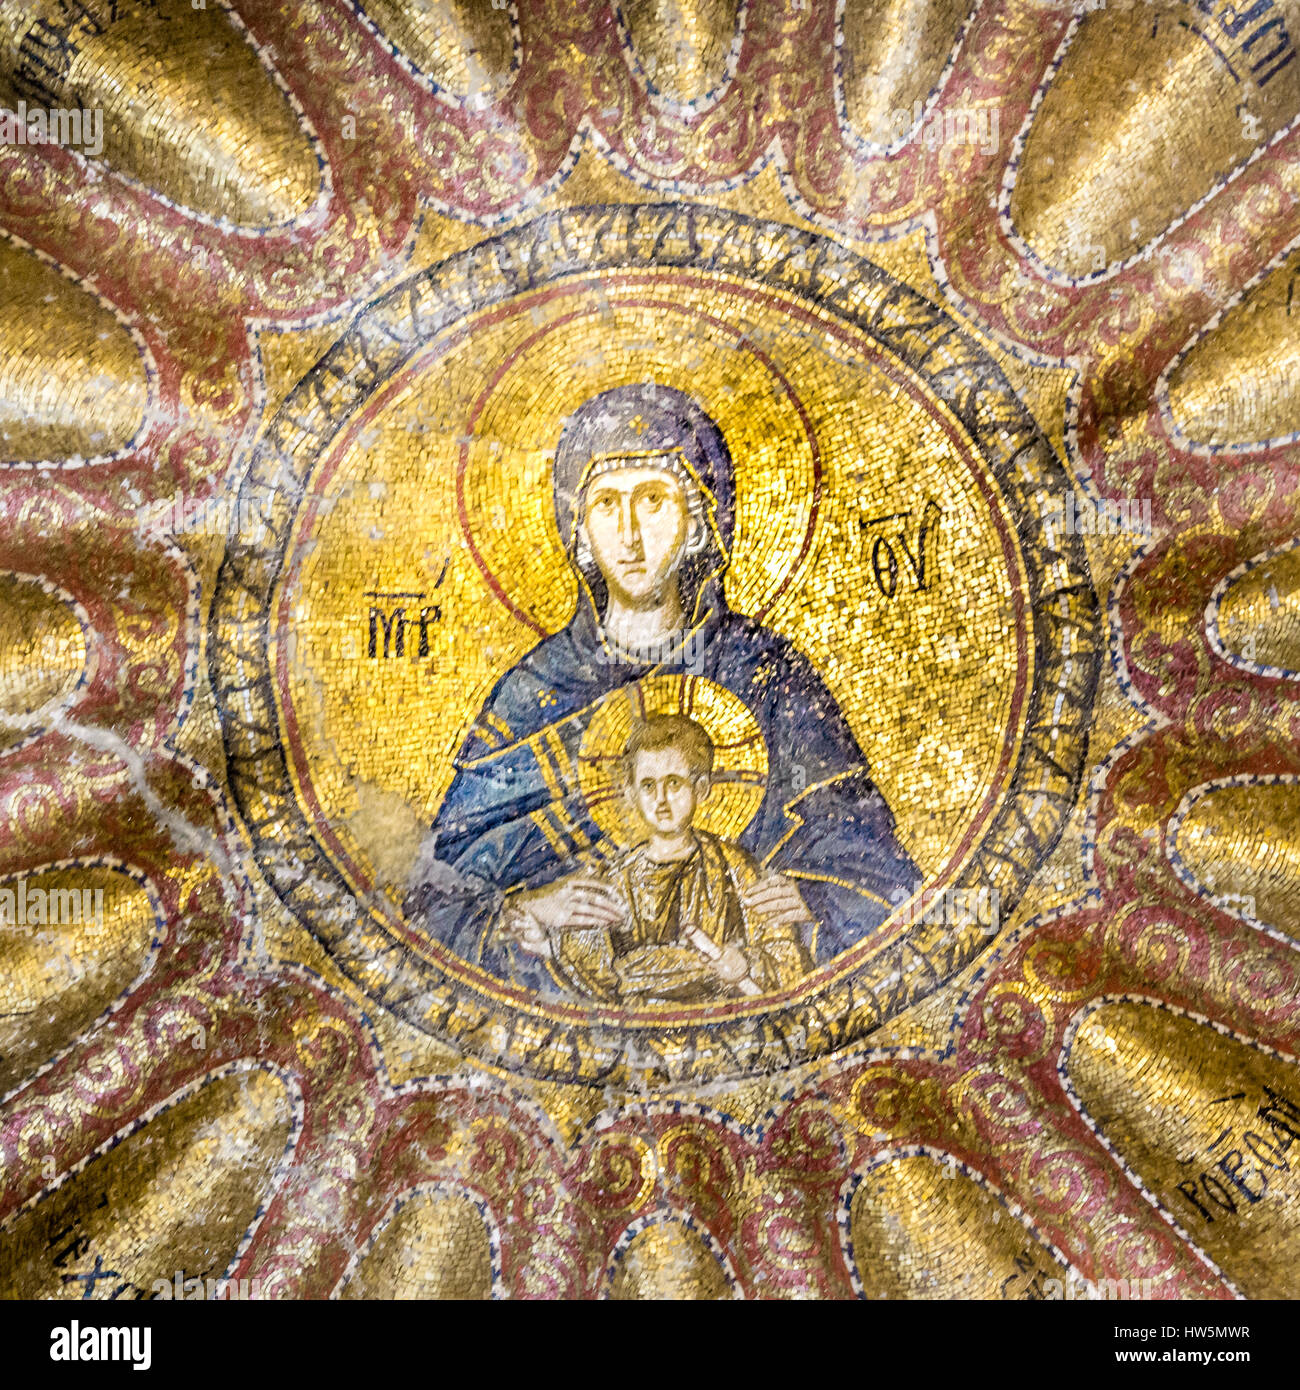 Virgen y el Niño Jesús. La Madre de Dios. Mosaico de la Iglesia de Chora, Estambul, 11 de oct de 2013, la Virgen de la Blachernitissa dentro de una mandorla Foto de stock